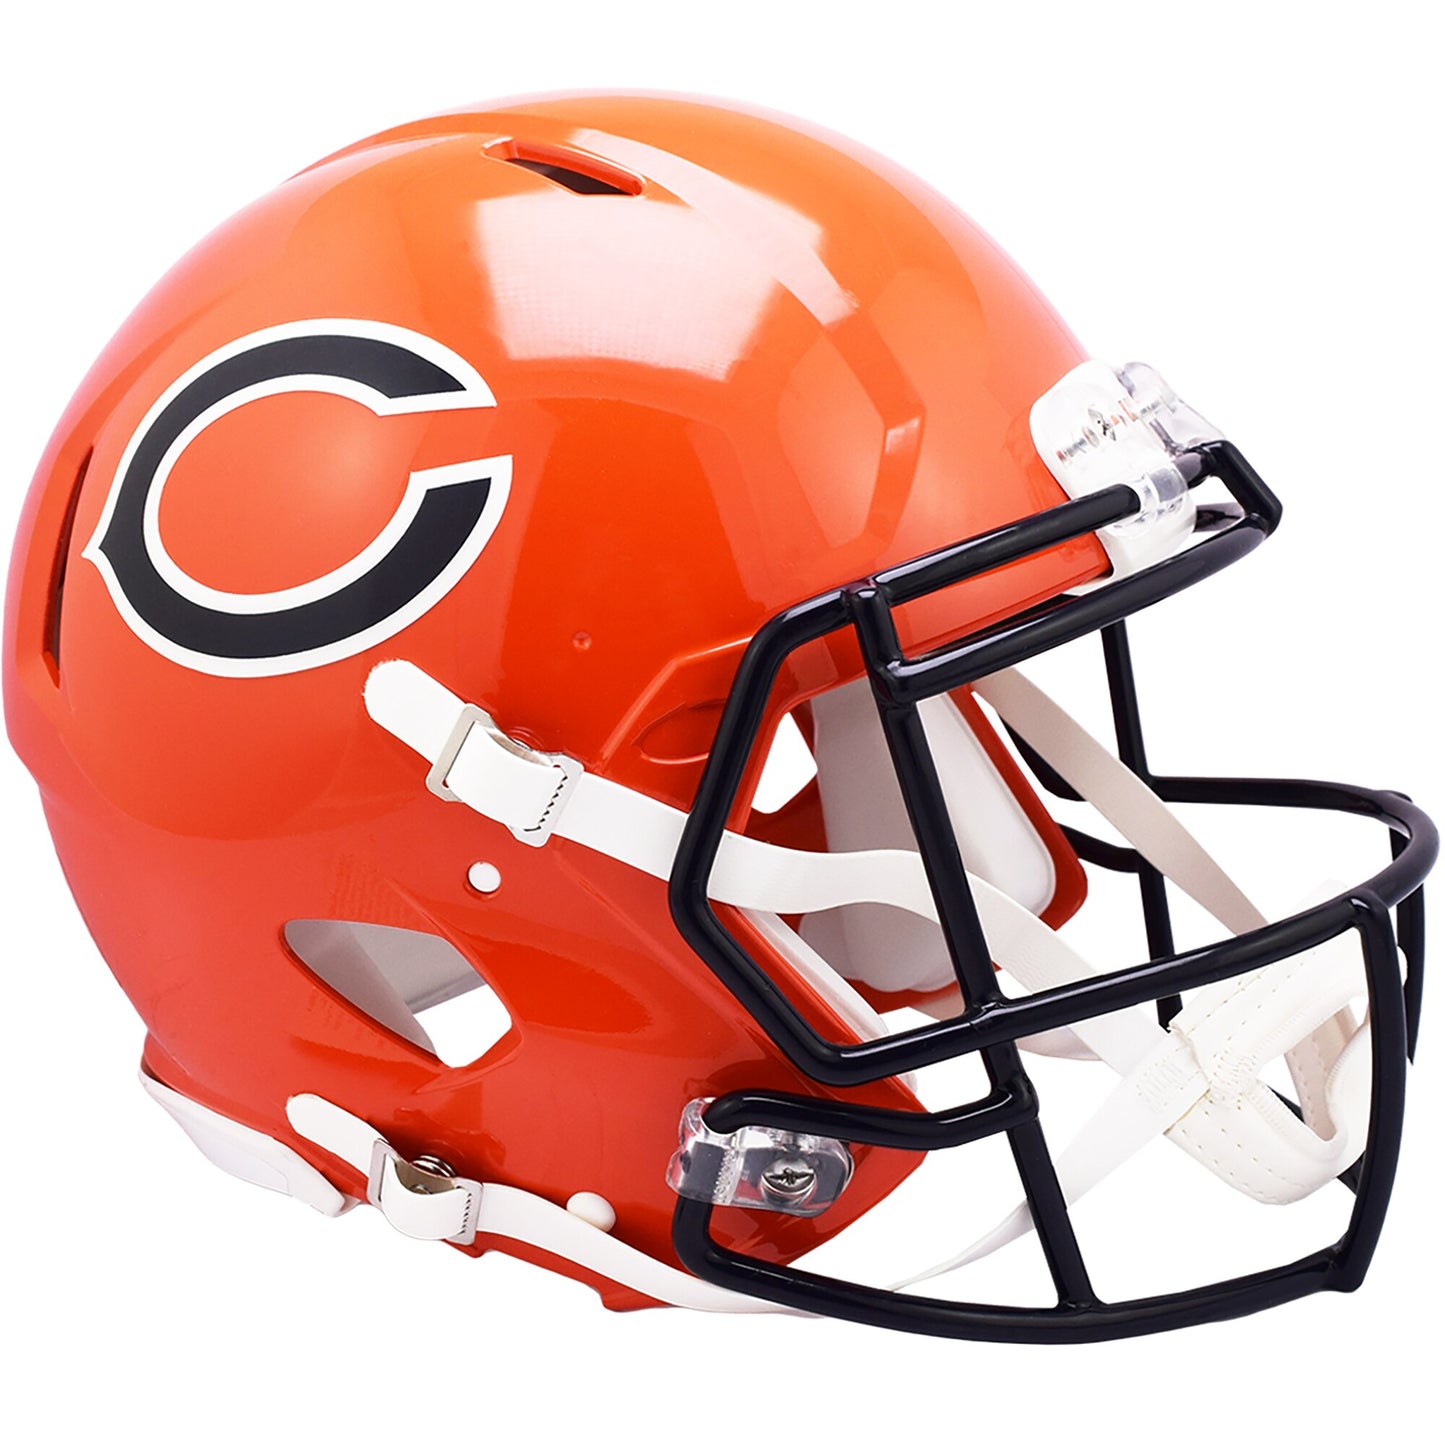 Chicago Bears Riddell Orange Alternate Speed Authentic Helmet